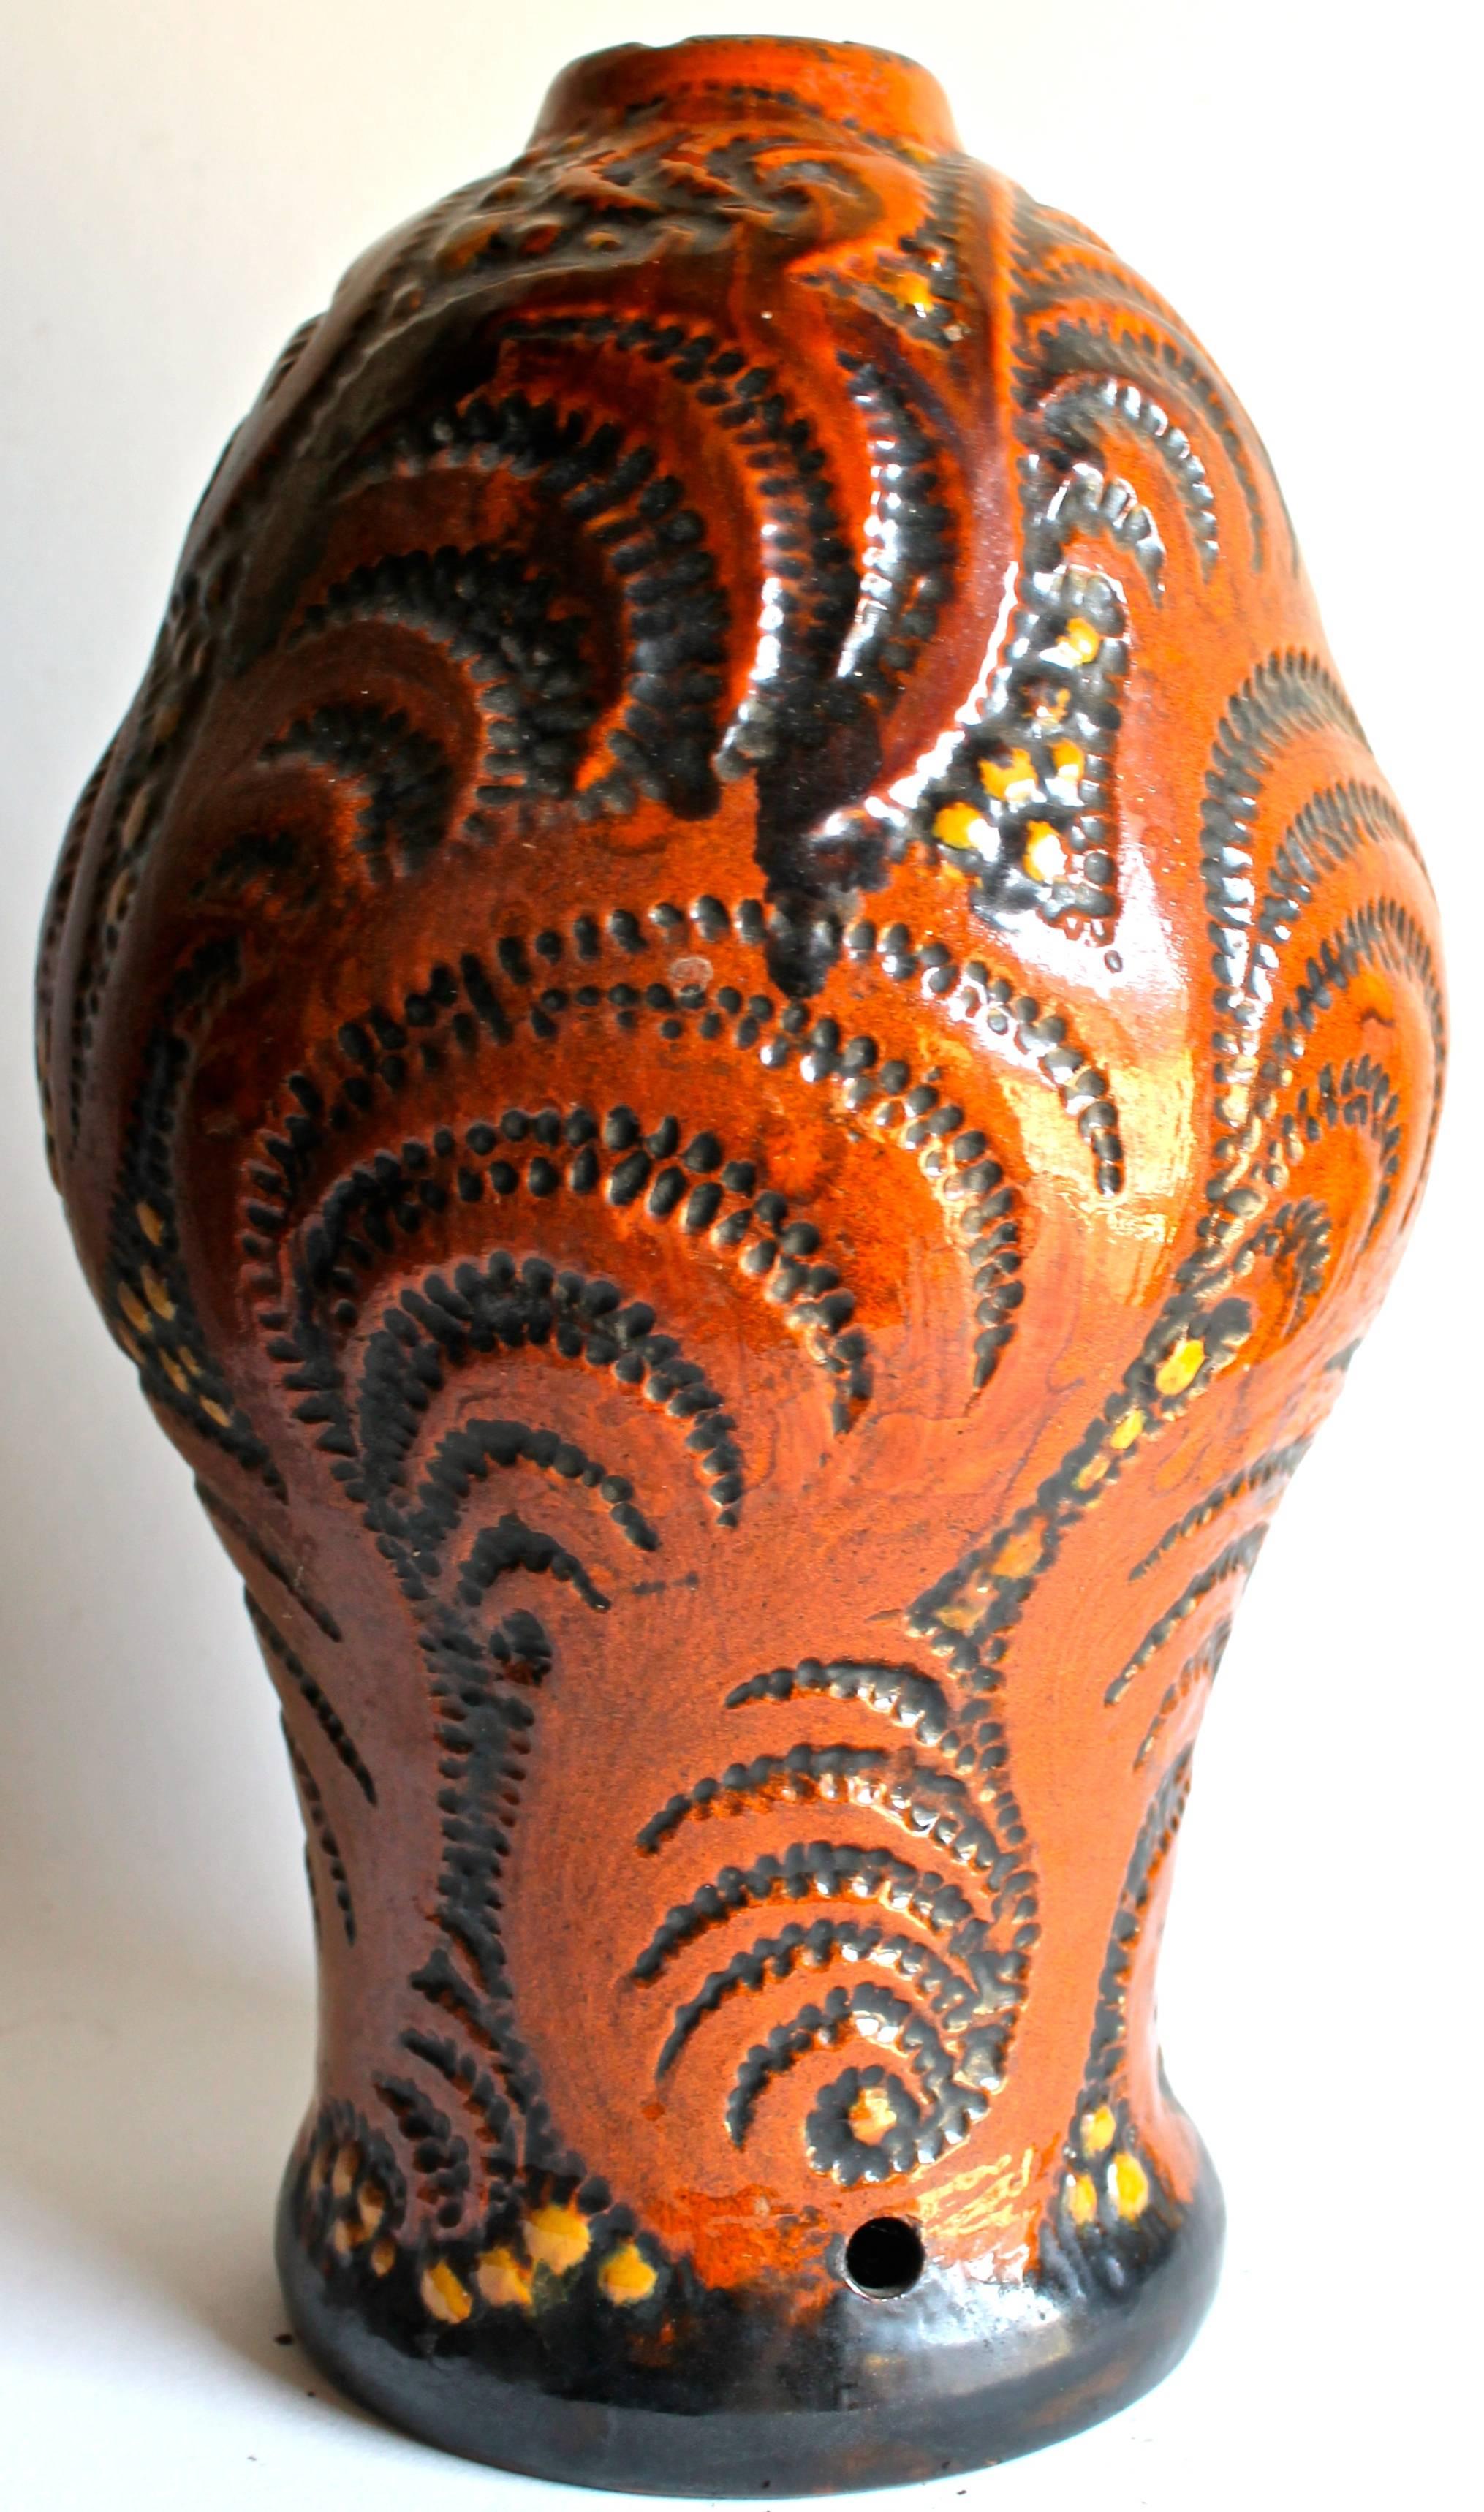 Forme ancienne de vase utilisée comme base de lampe.